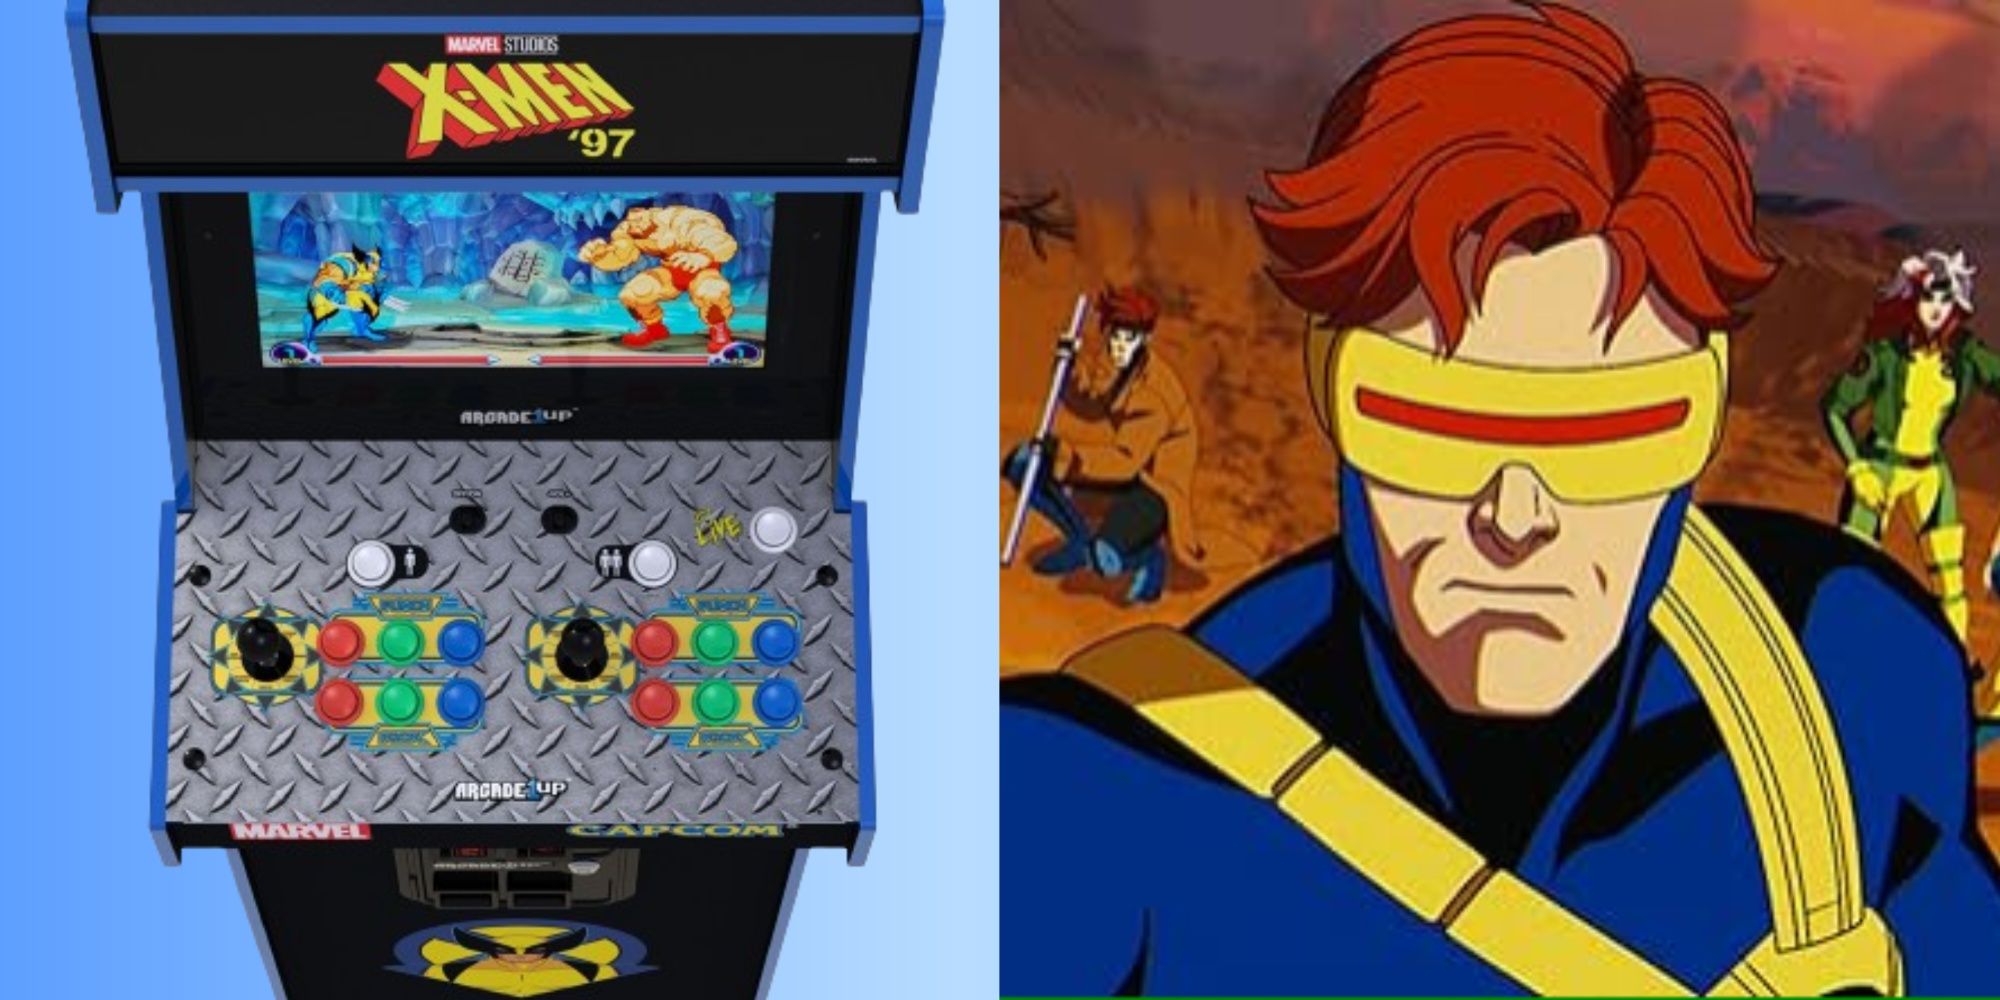 x-men '97 arcade1up machine, and cyclops in x-men '97